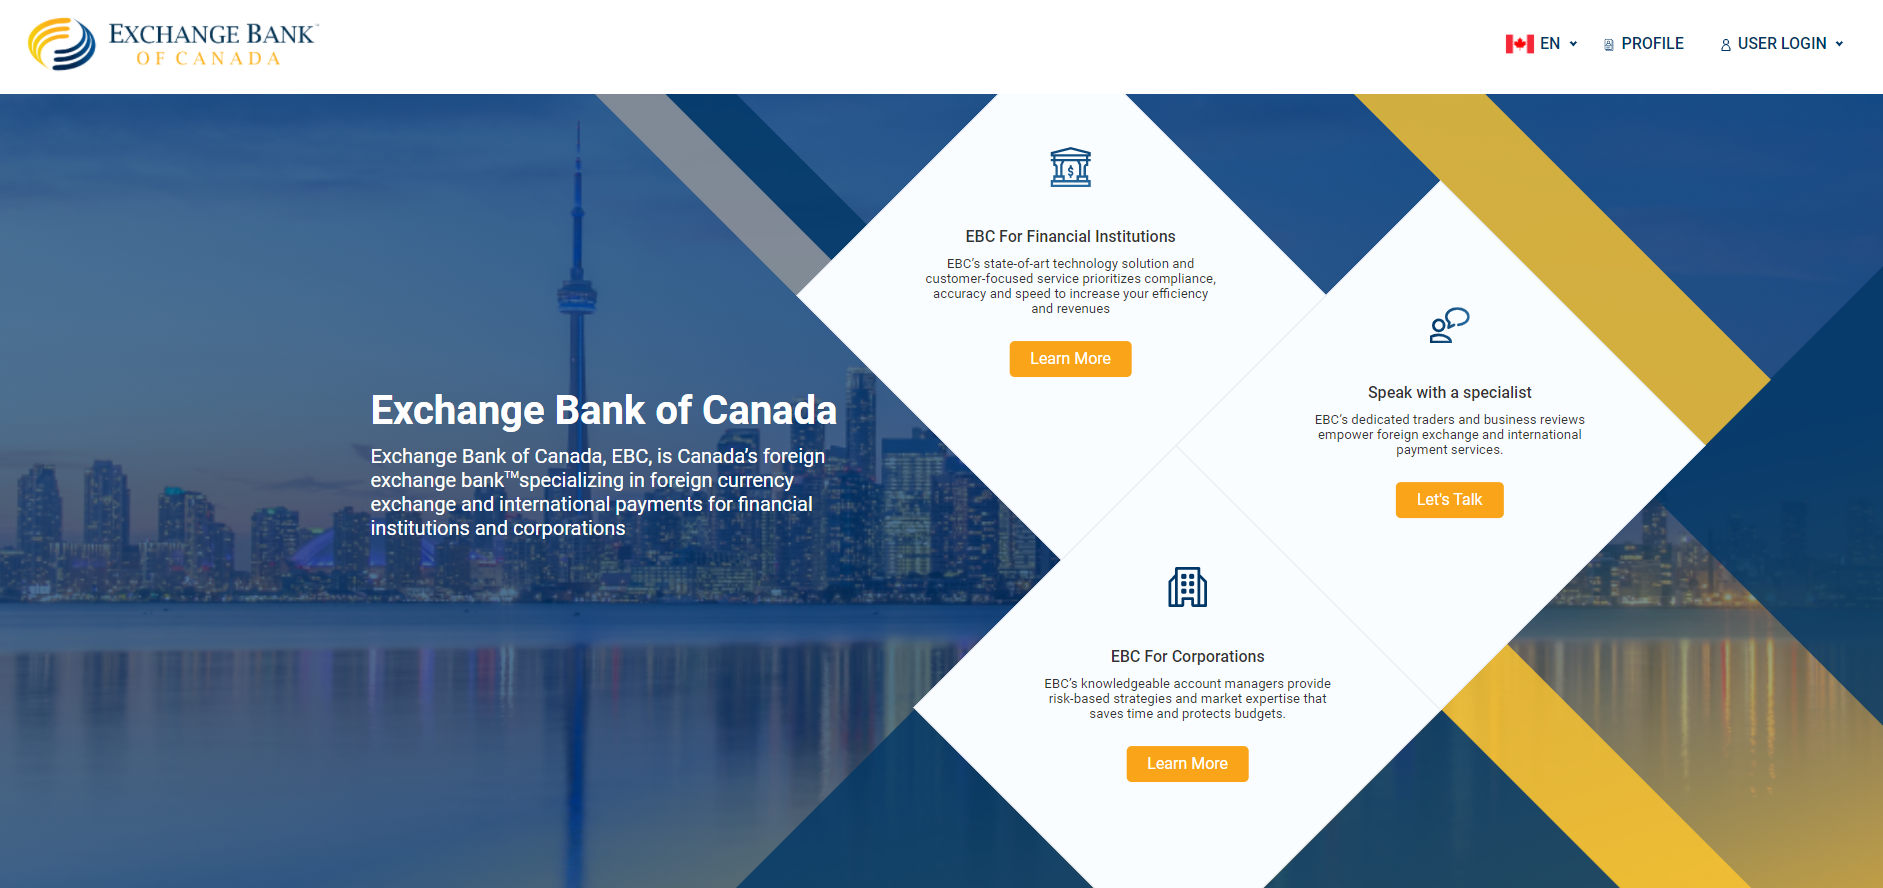 Exchange Bank of Canada Homepage English